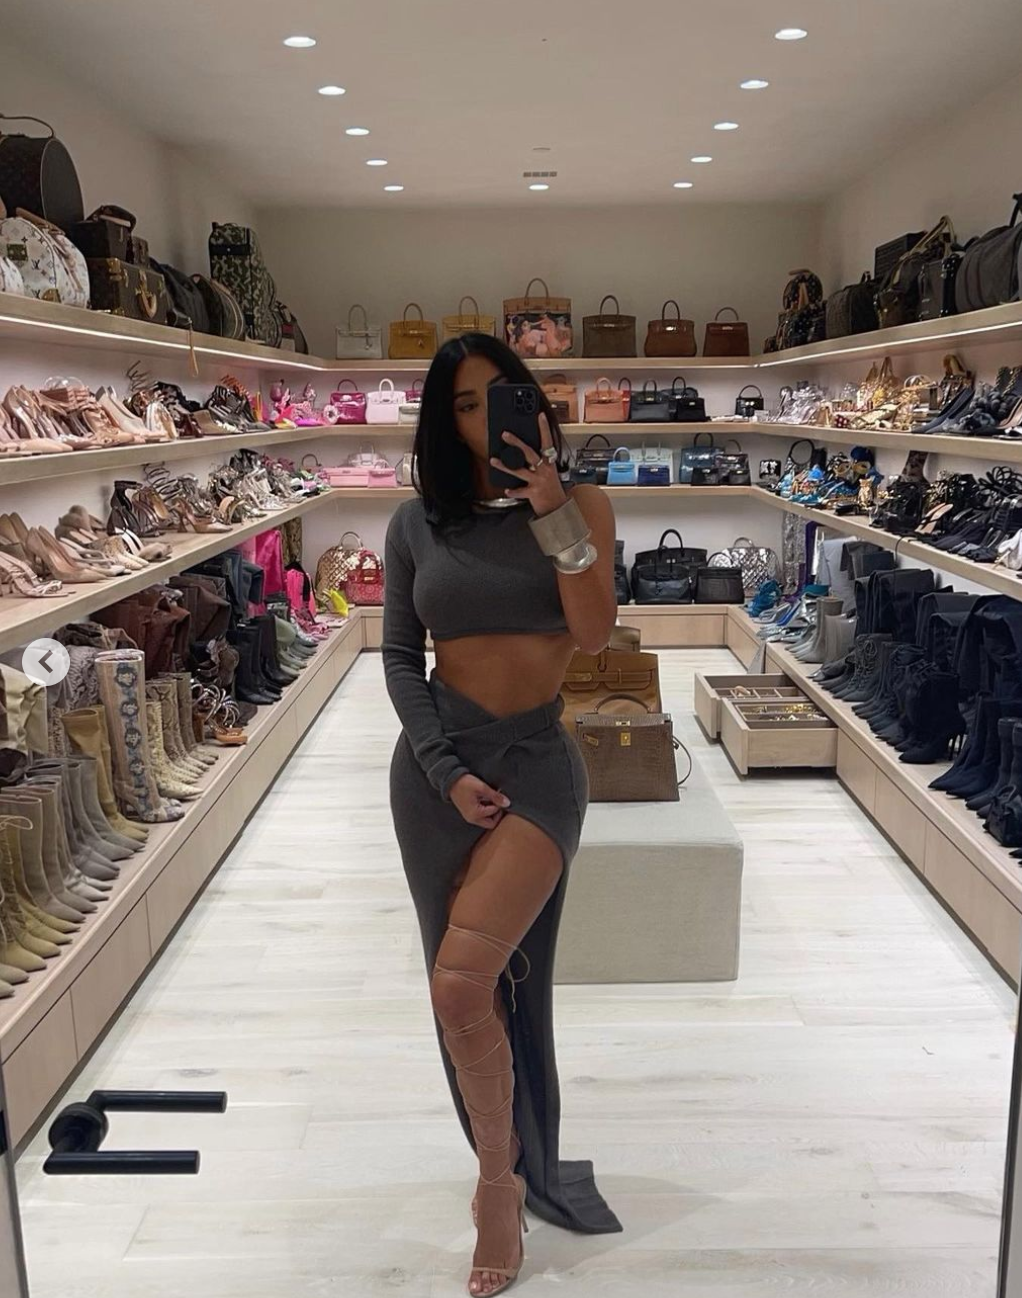 Inside the Kardashians' amazing closets